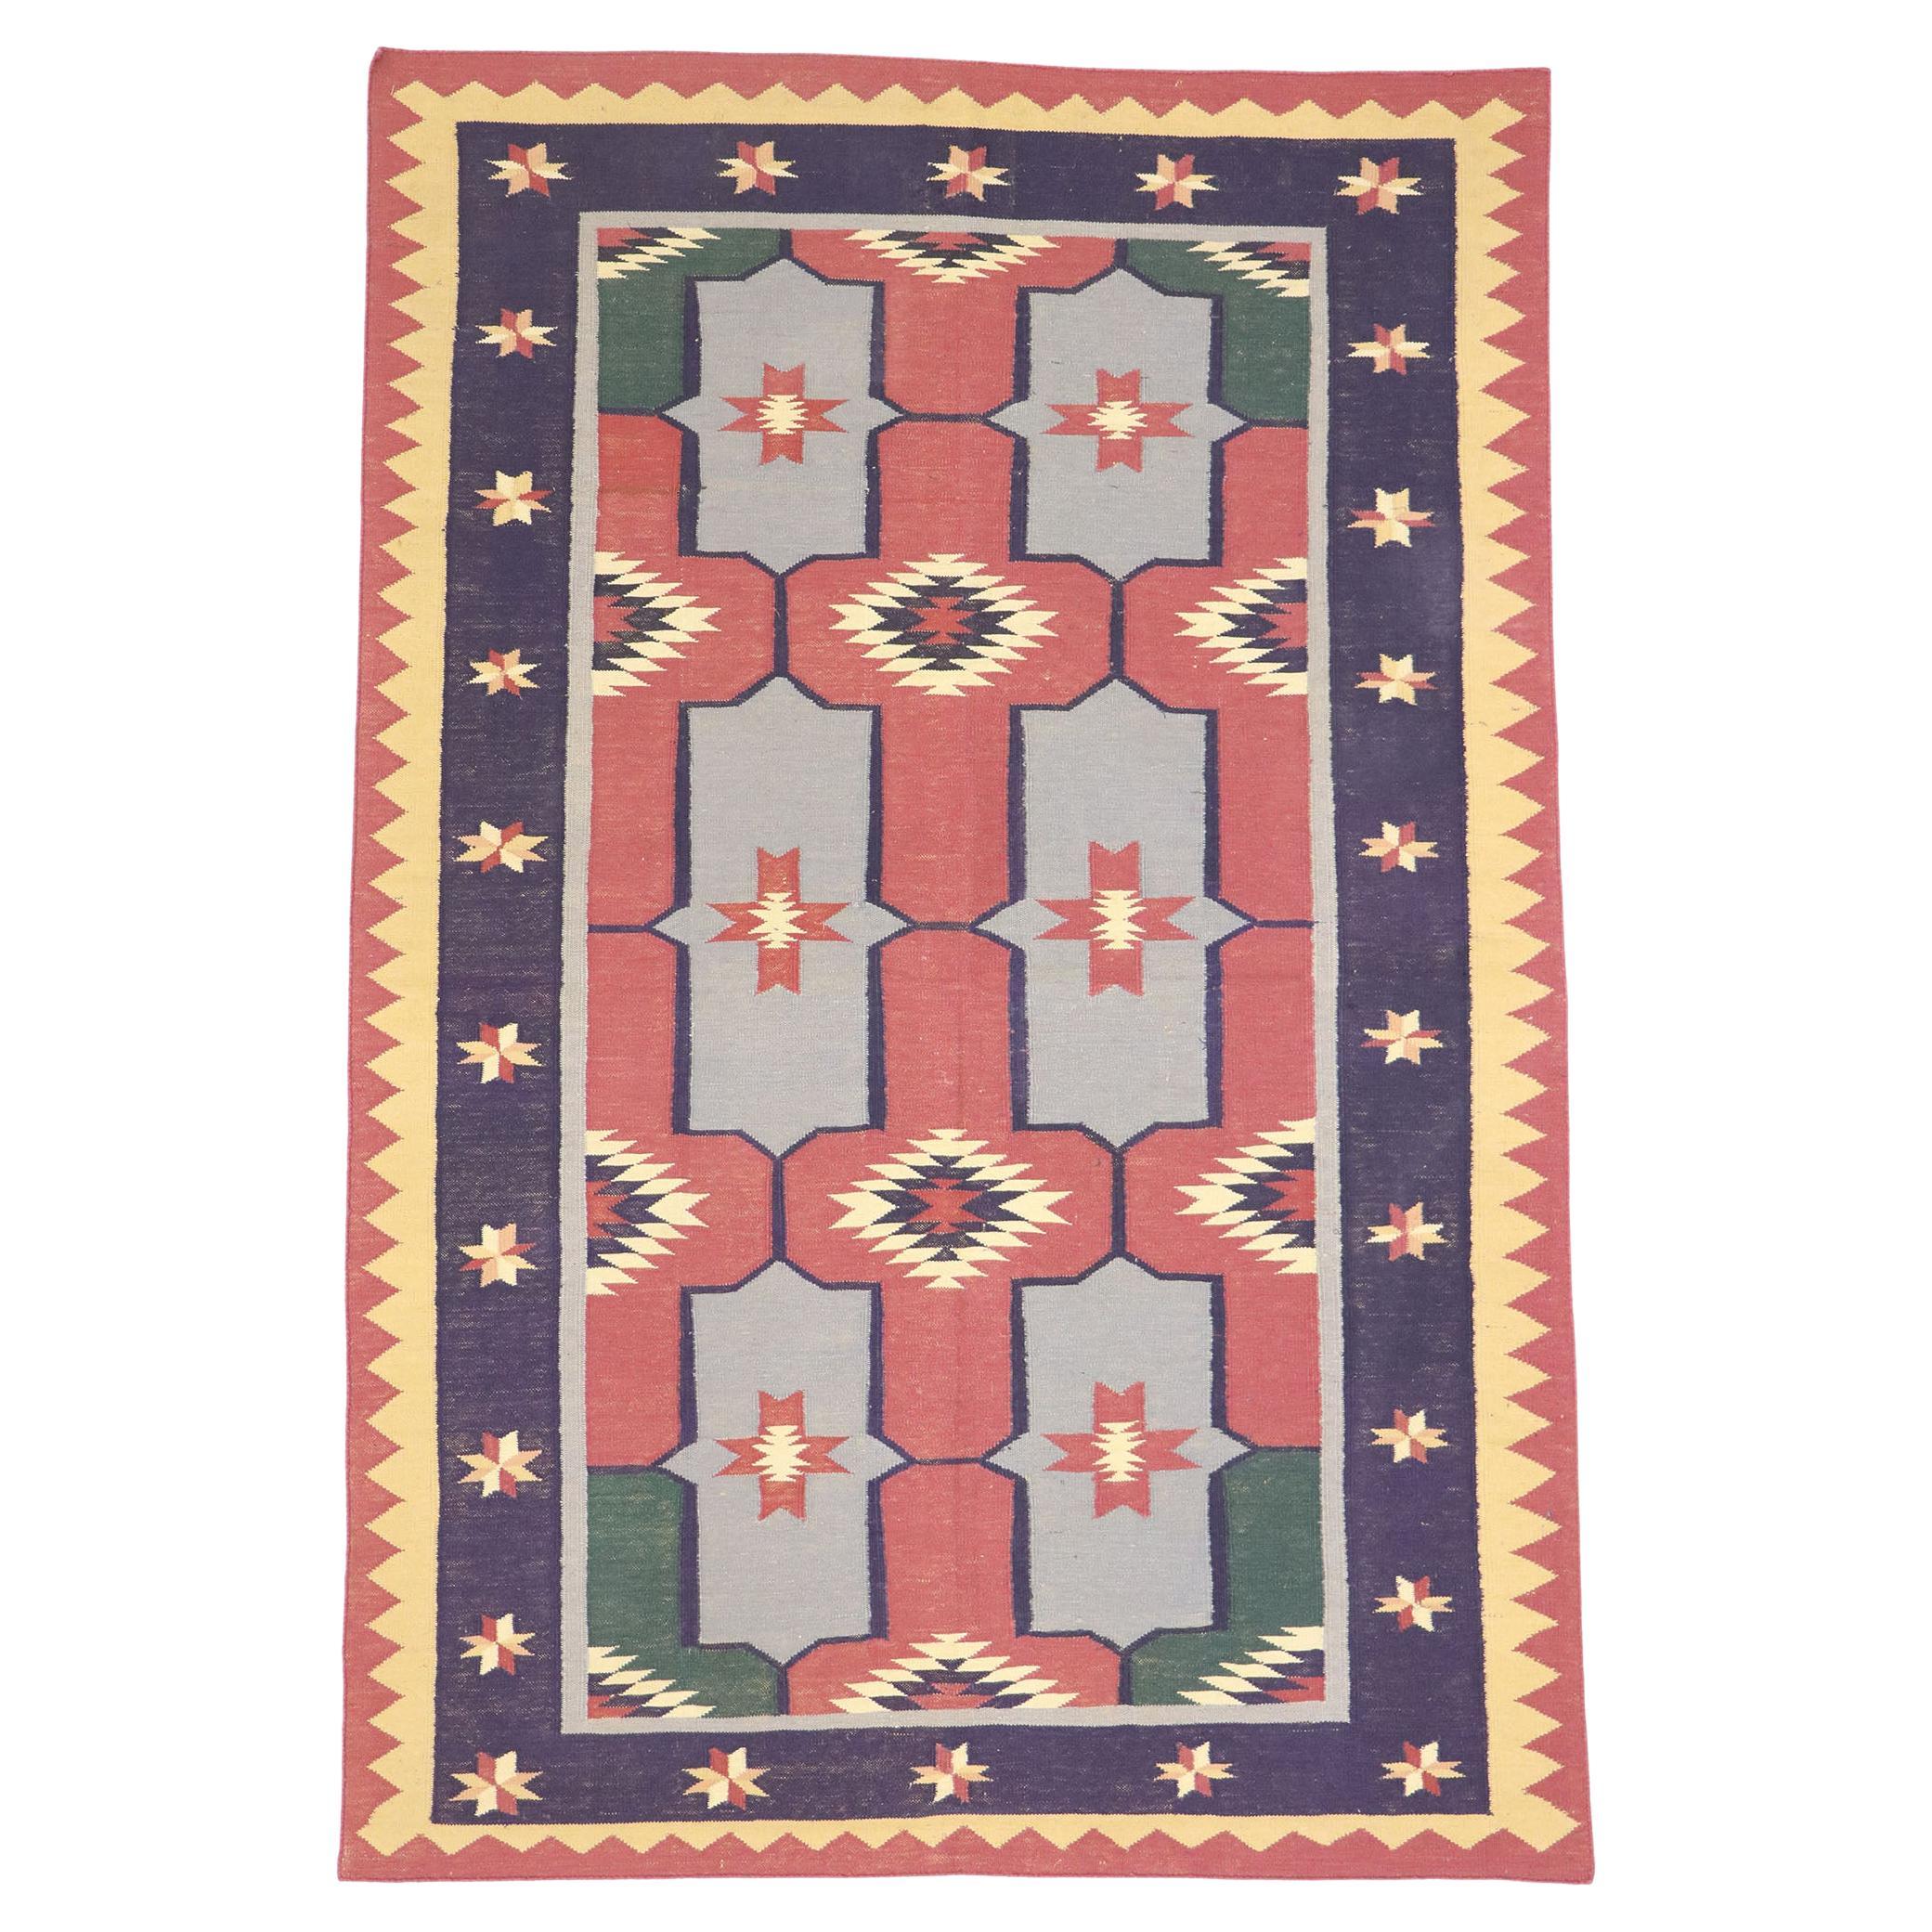 Rumnischer geometrischer Vintage-Kelim-Teppich im modernen Stammesstil